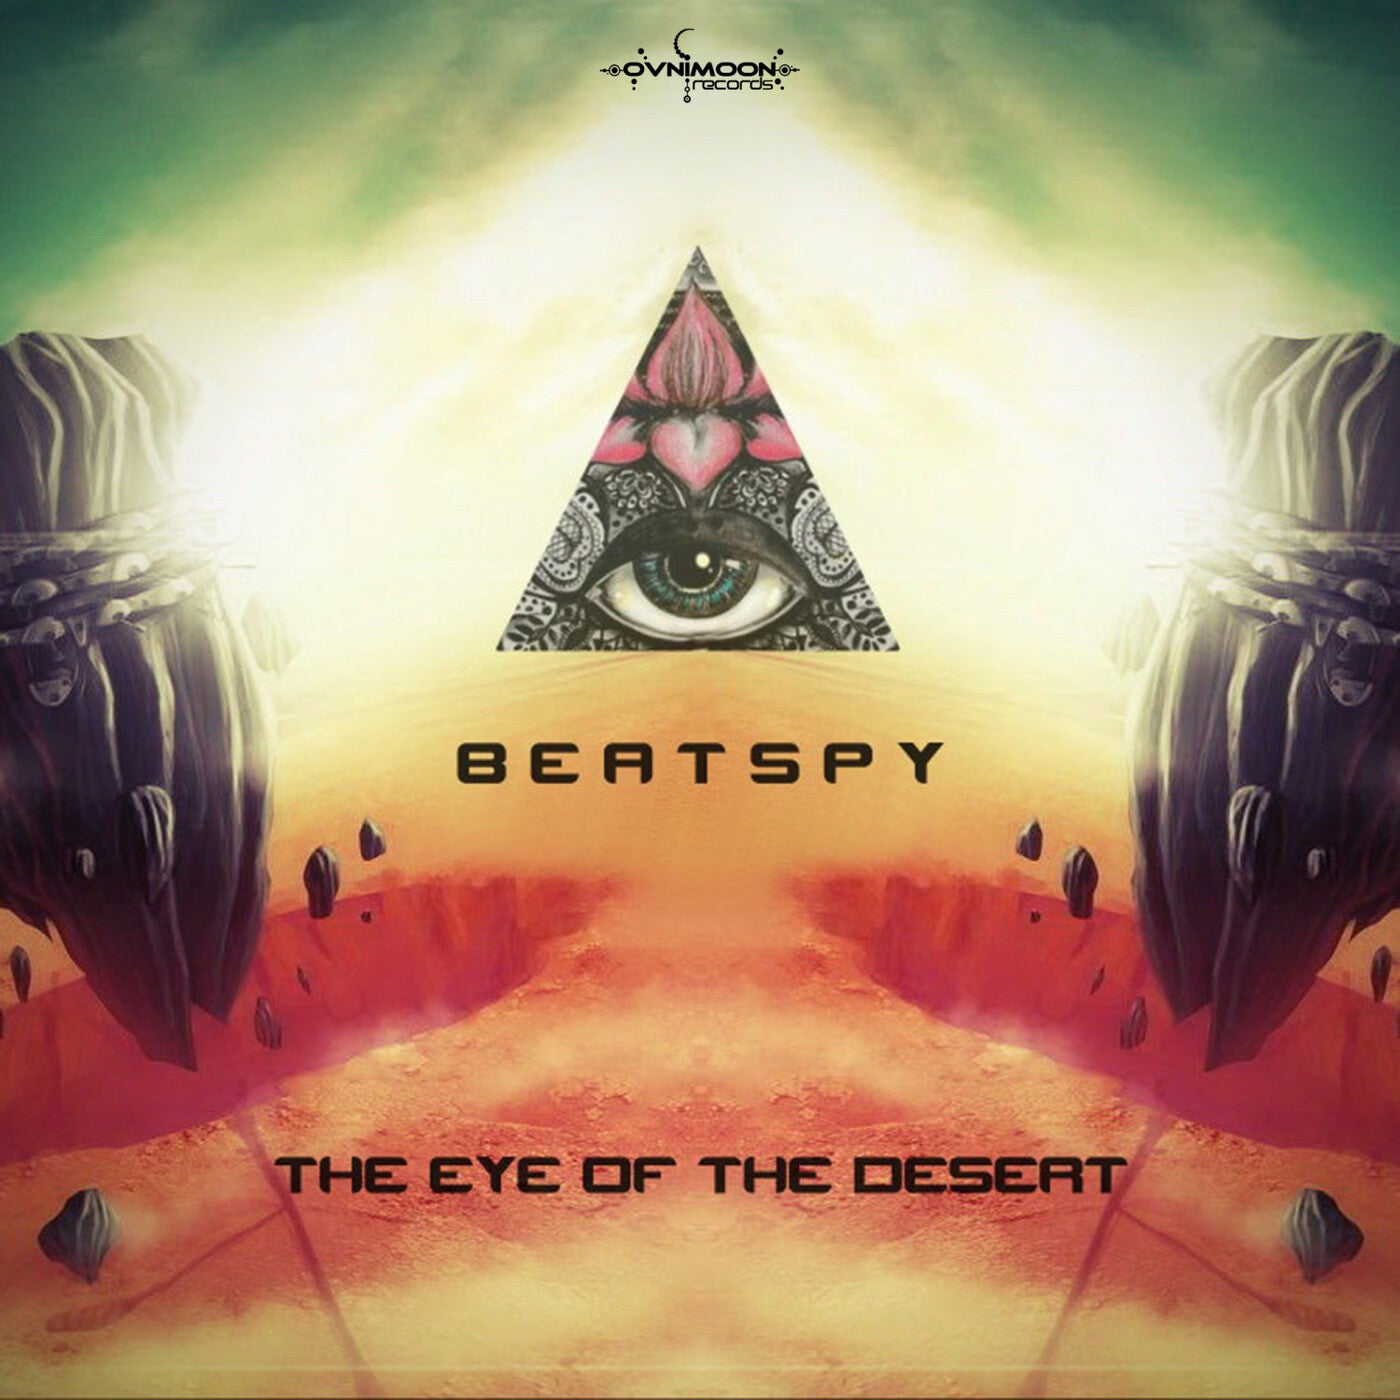 The Eye of the Desert